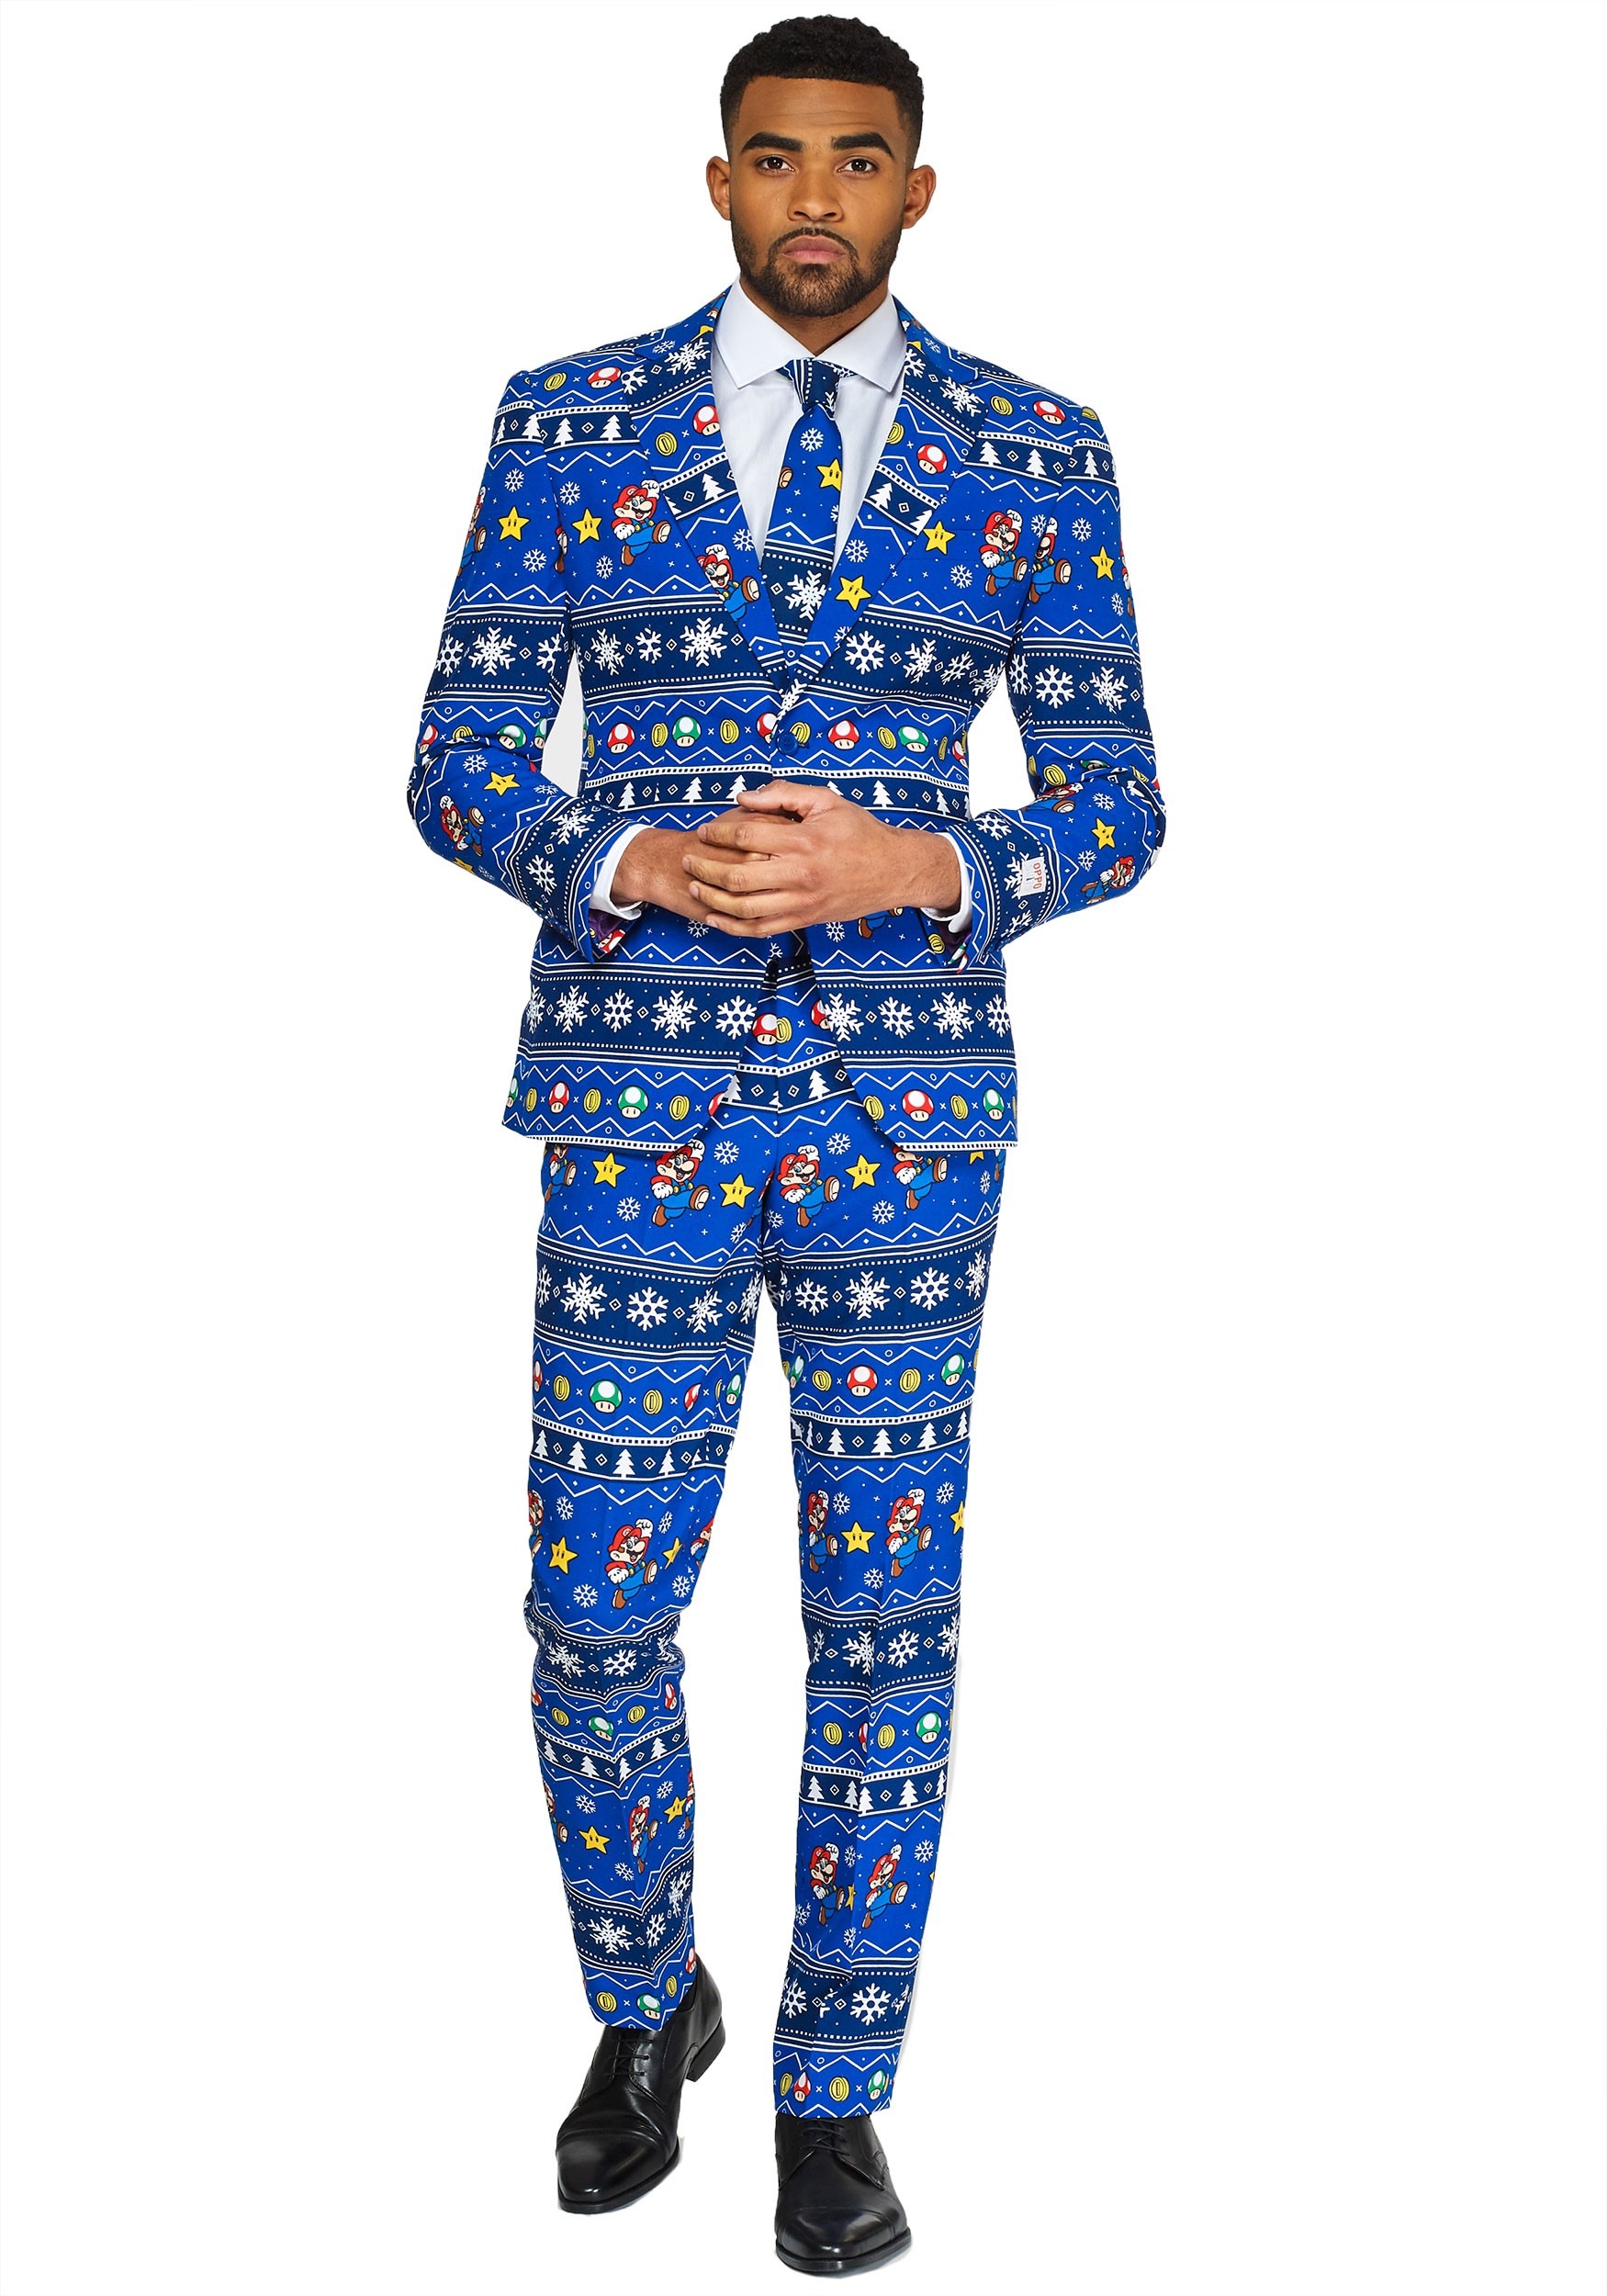 Opposuit Men's Merry Mario Suit